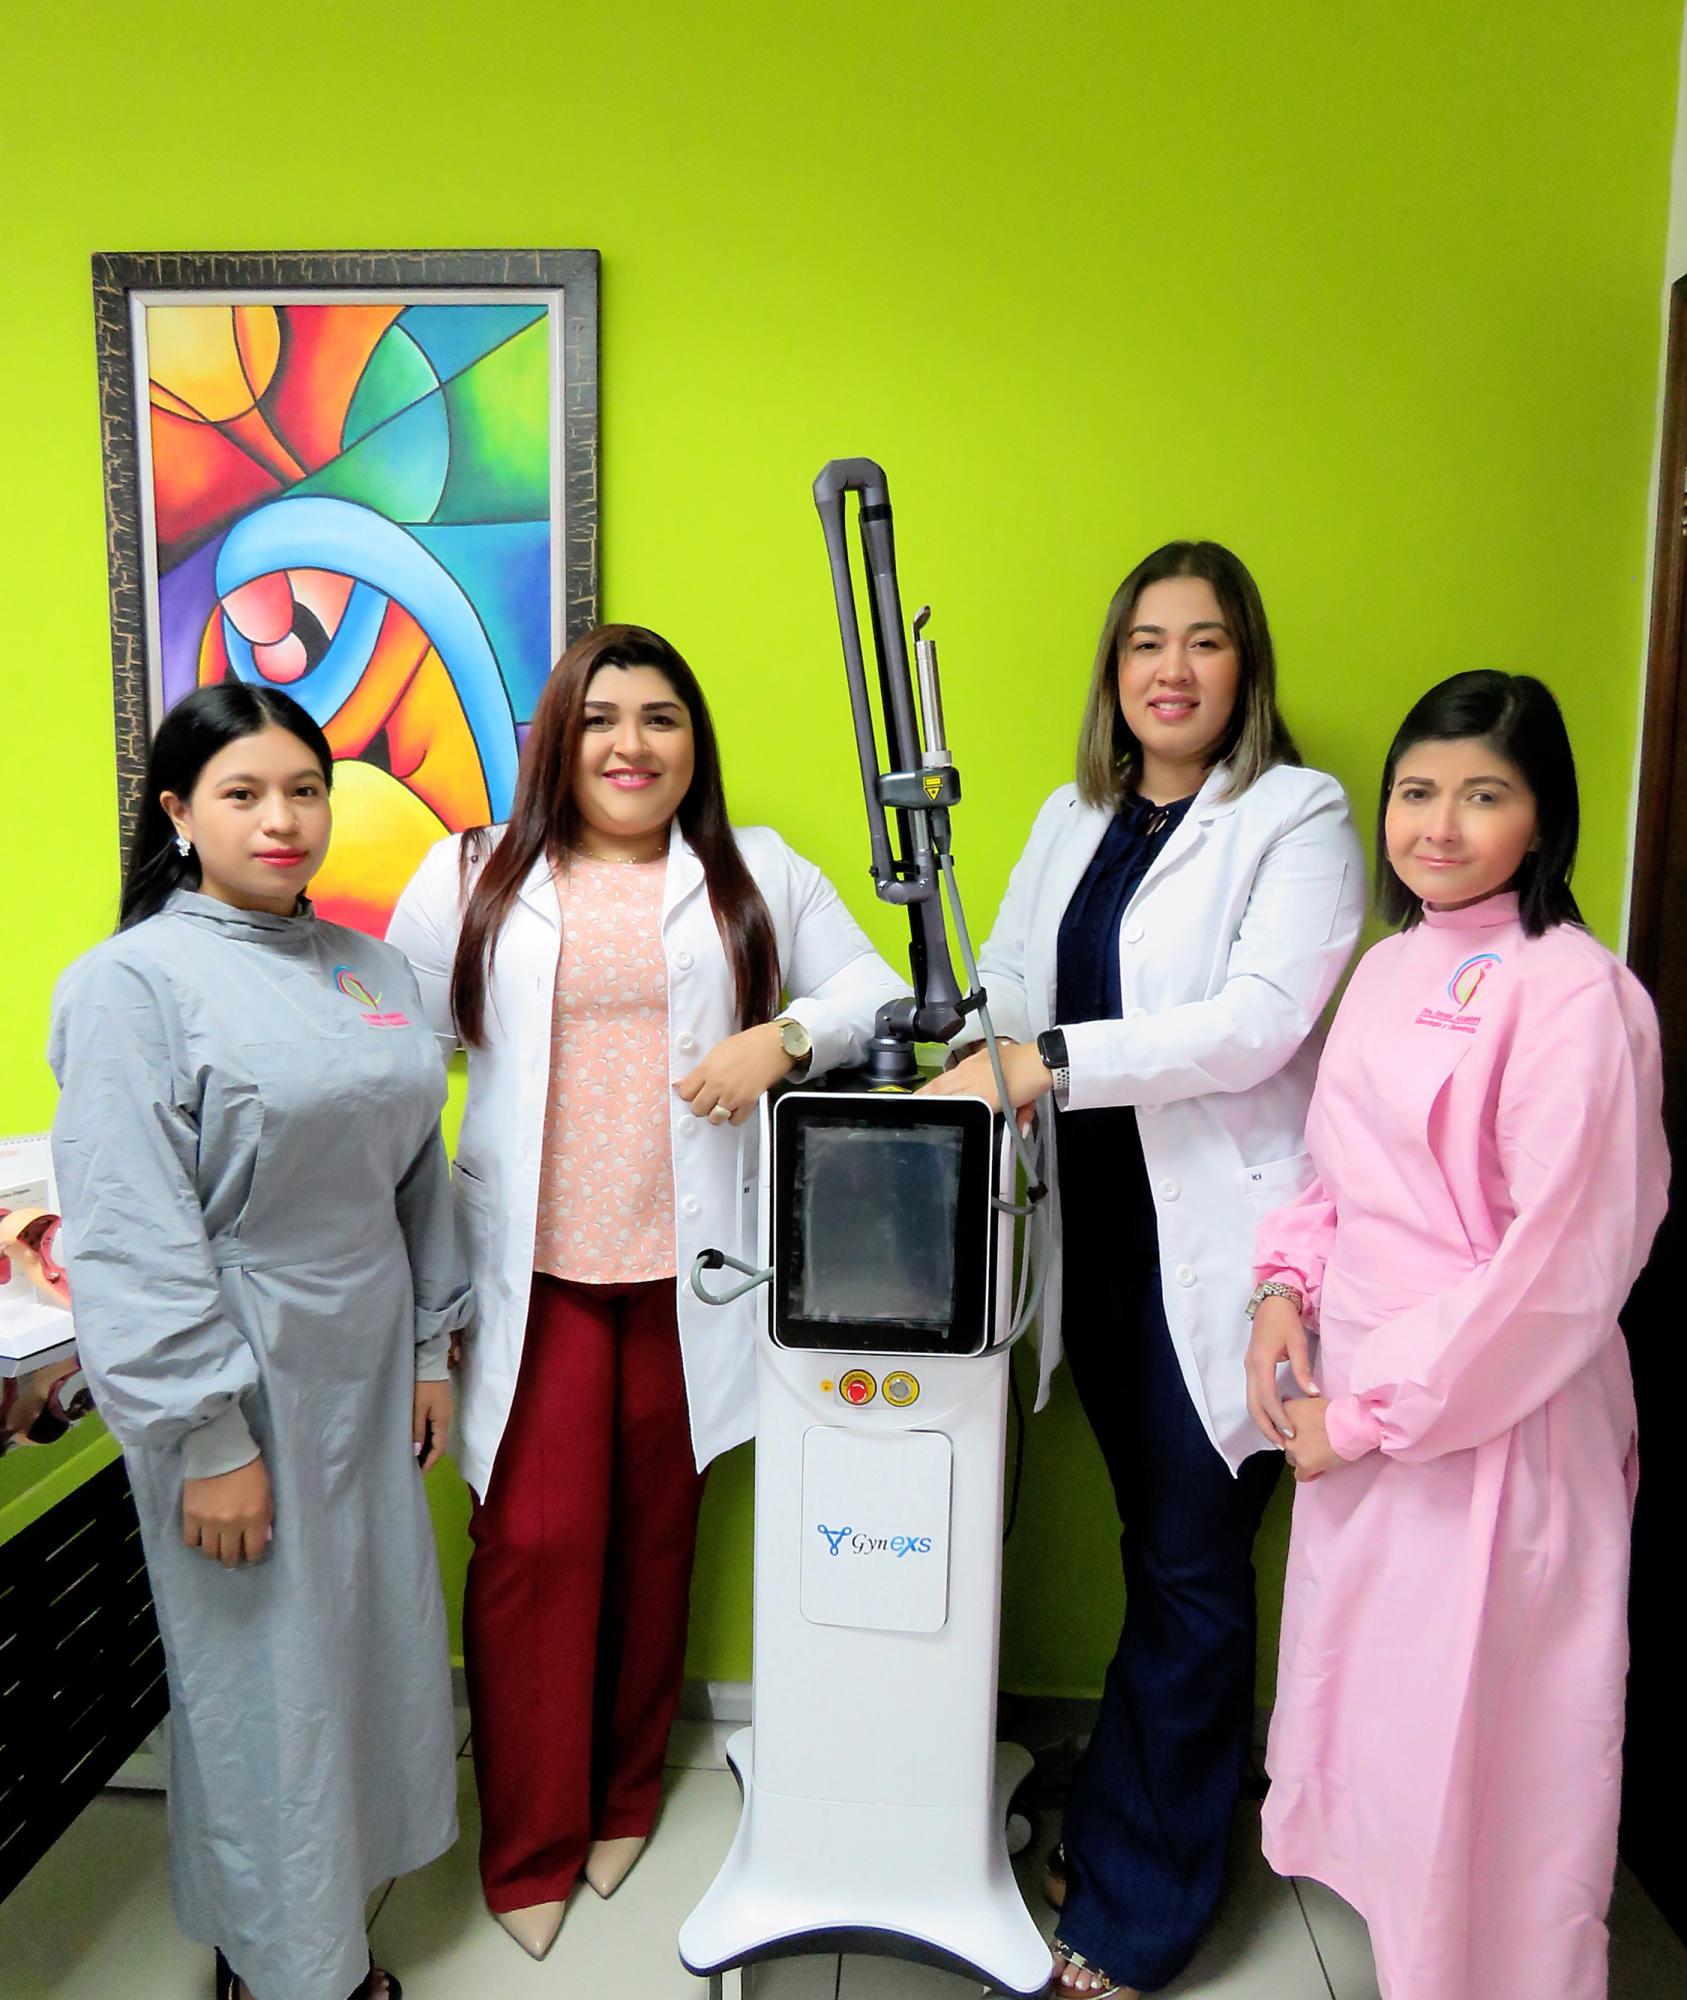 La doctora Sarahí Alcántara con su equipo de asistentes Carolina Tabora, la doctora Gina Martínez y Marisol de Dios.